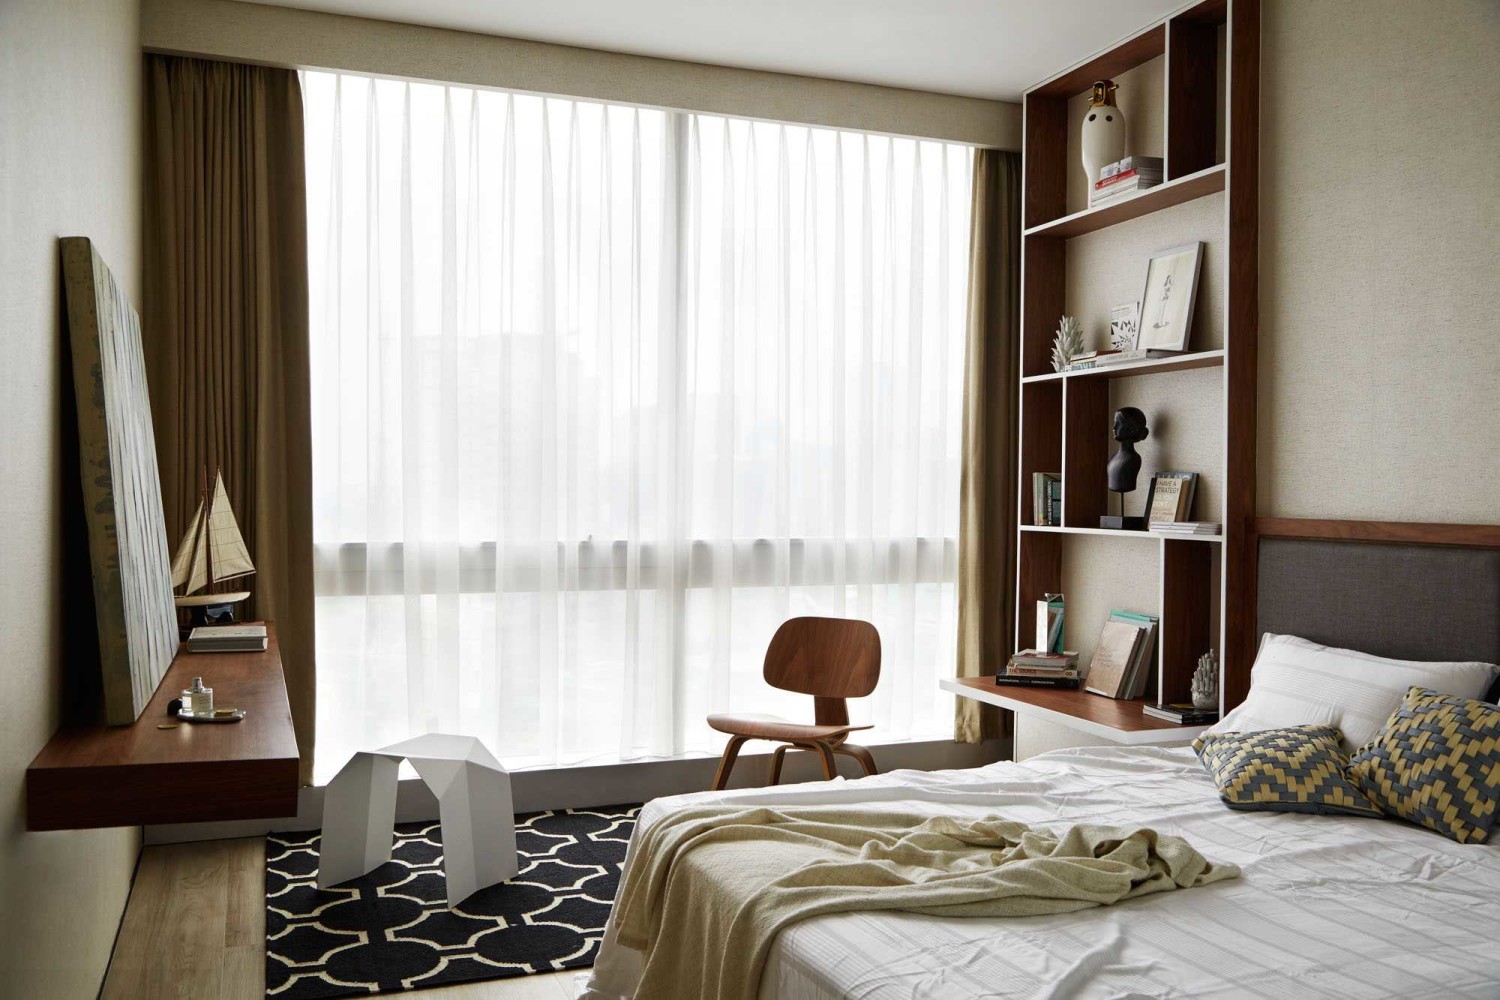 10 Desain Interior Kamar Tidur Mewah Untuk Tidur Yang - Desain Kamar Jendela Besar - HD Wallpaper 